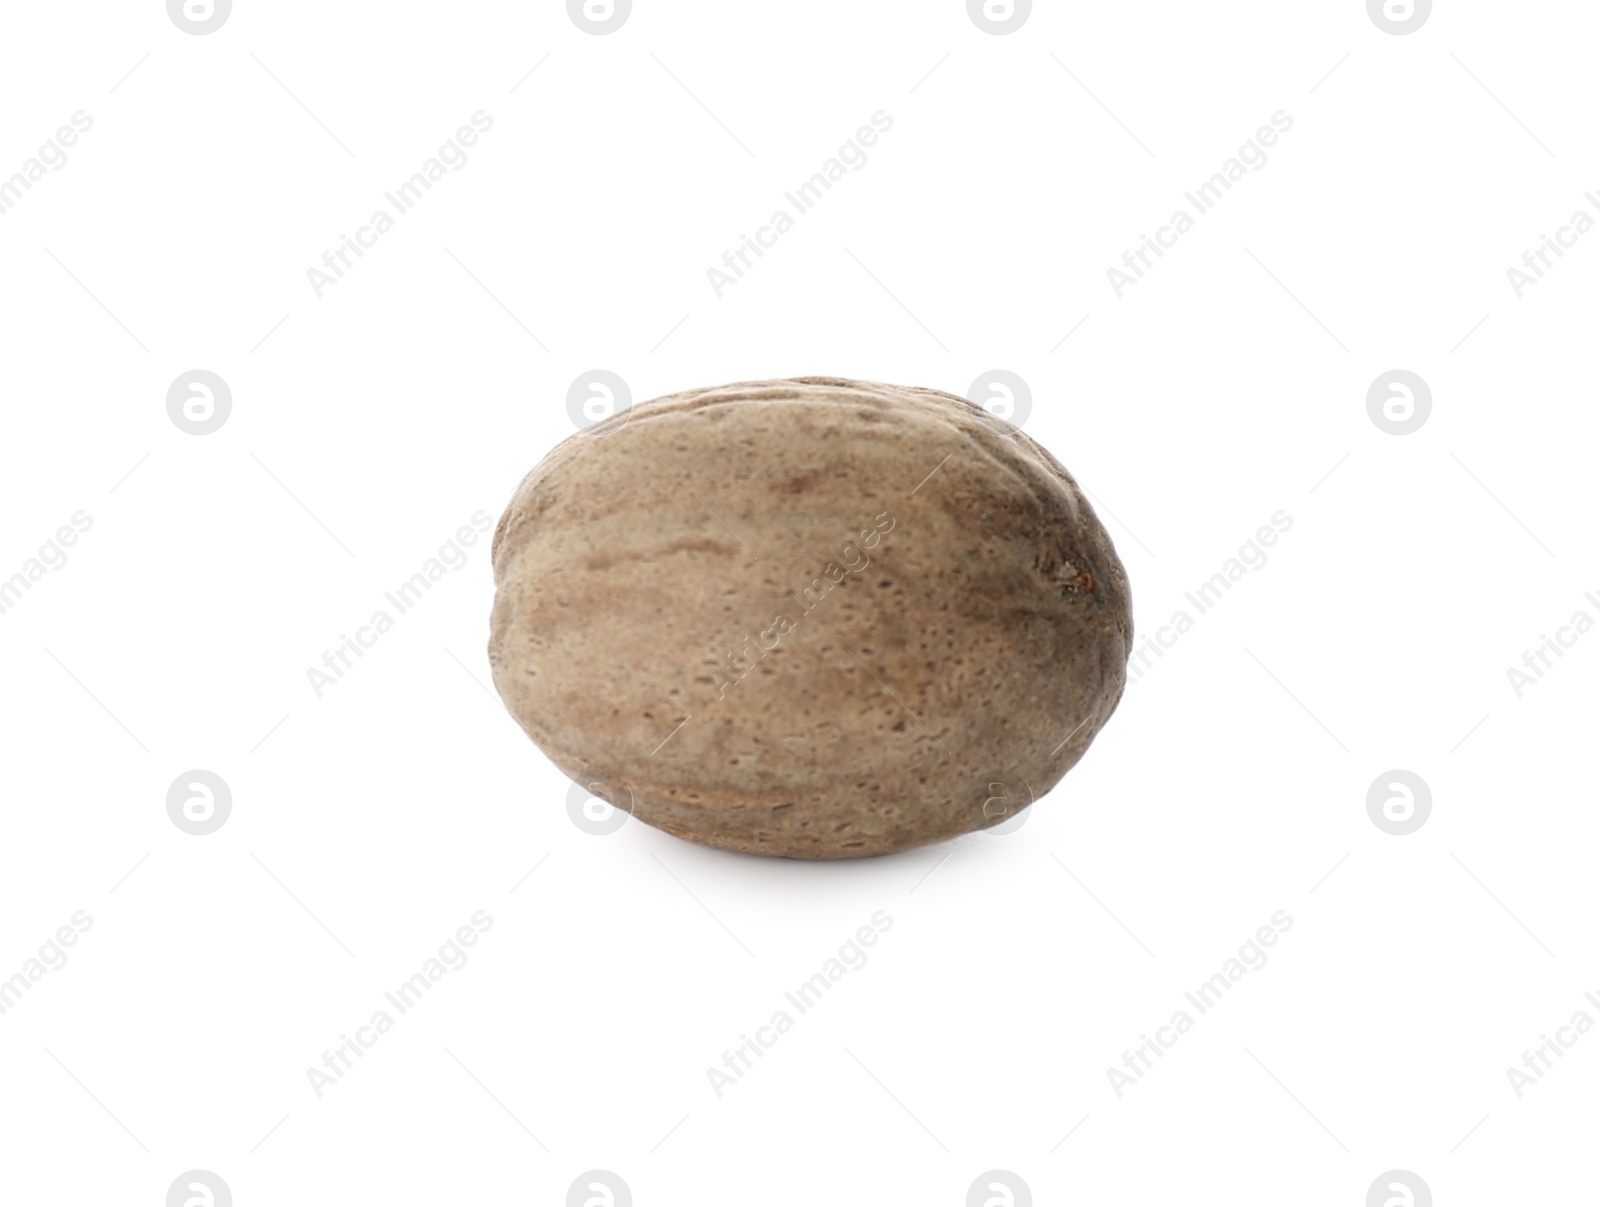 Photo of One whole nutmeg seed isolated on white